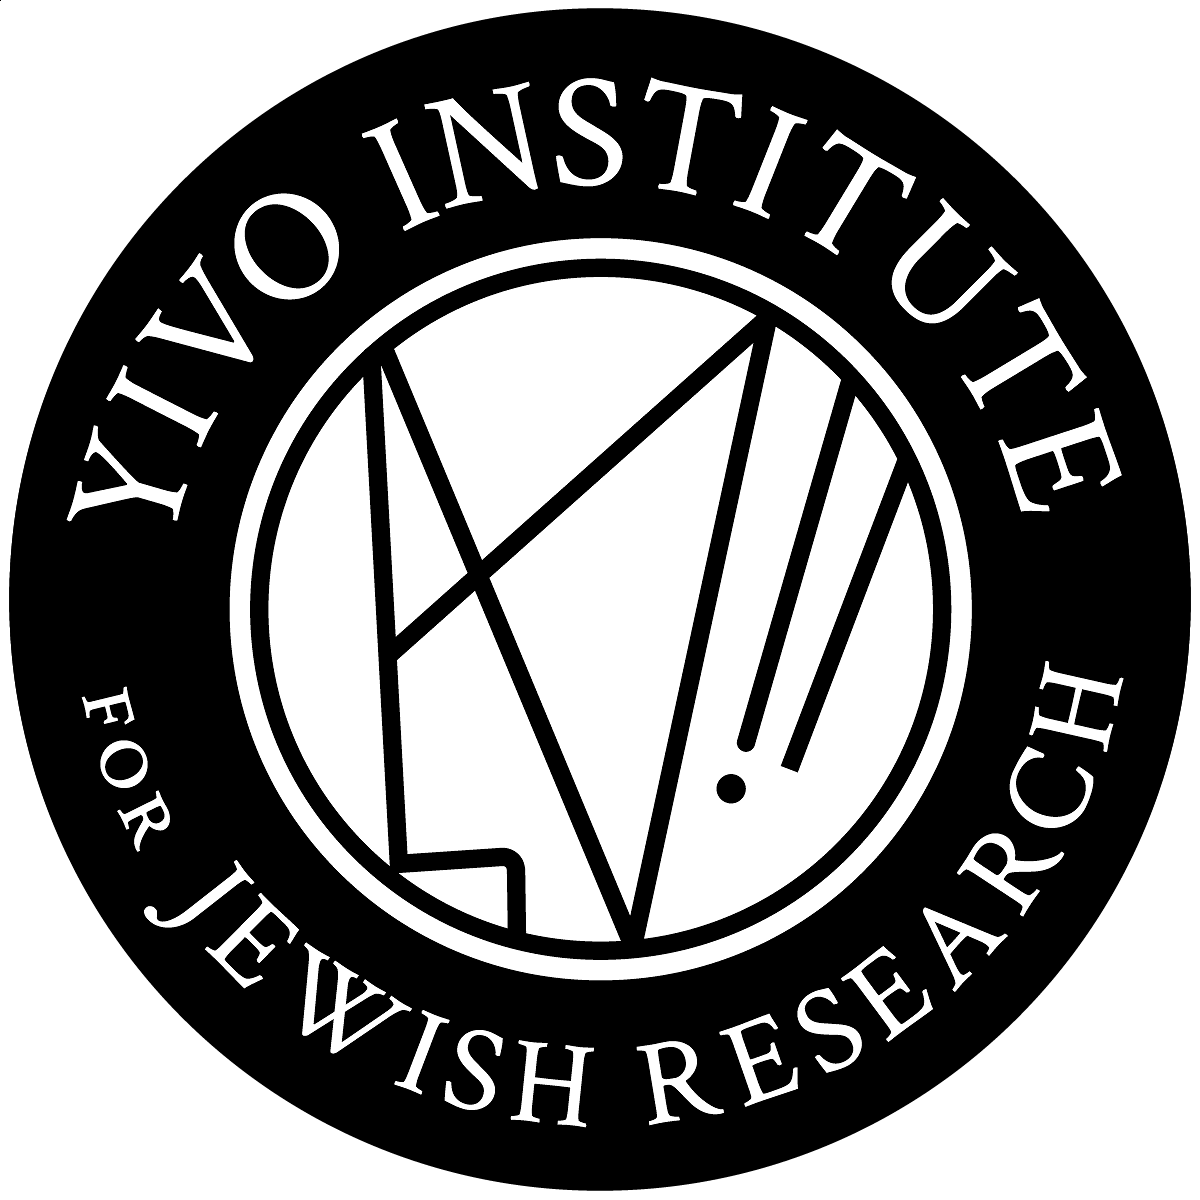 YIVO Logo bw.png [91.00 KB]